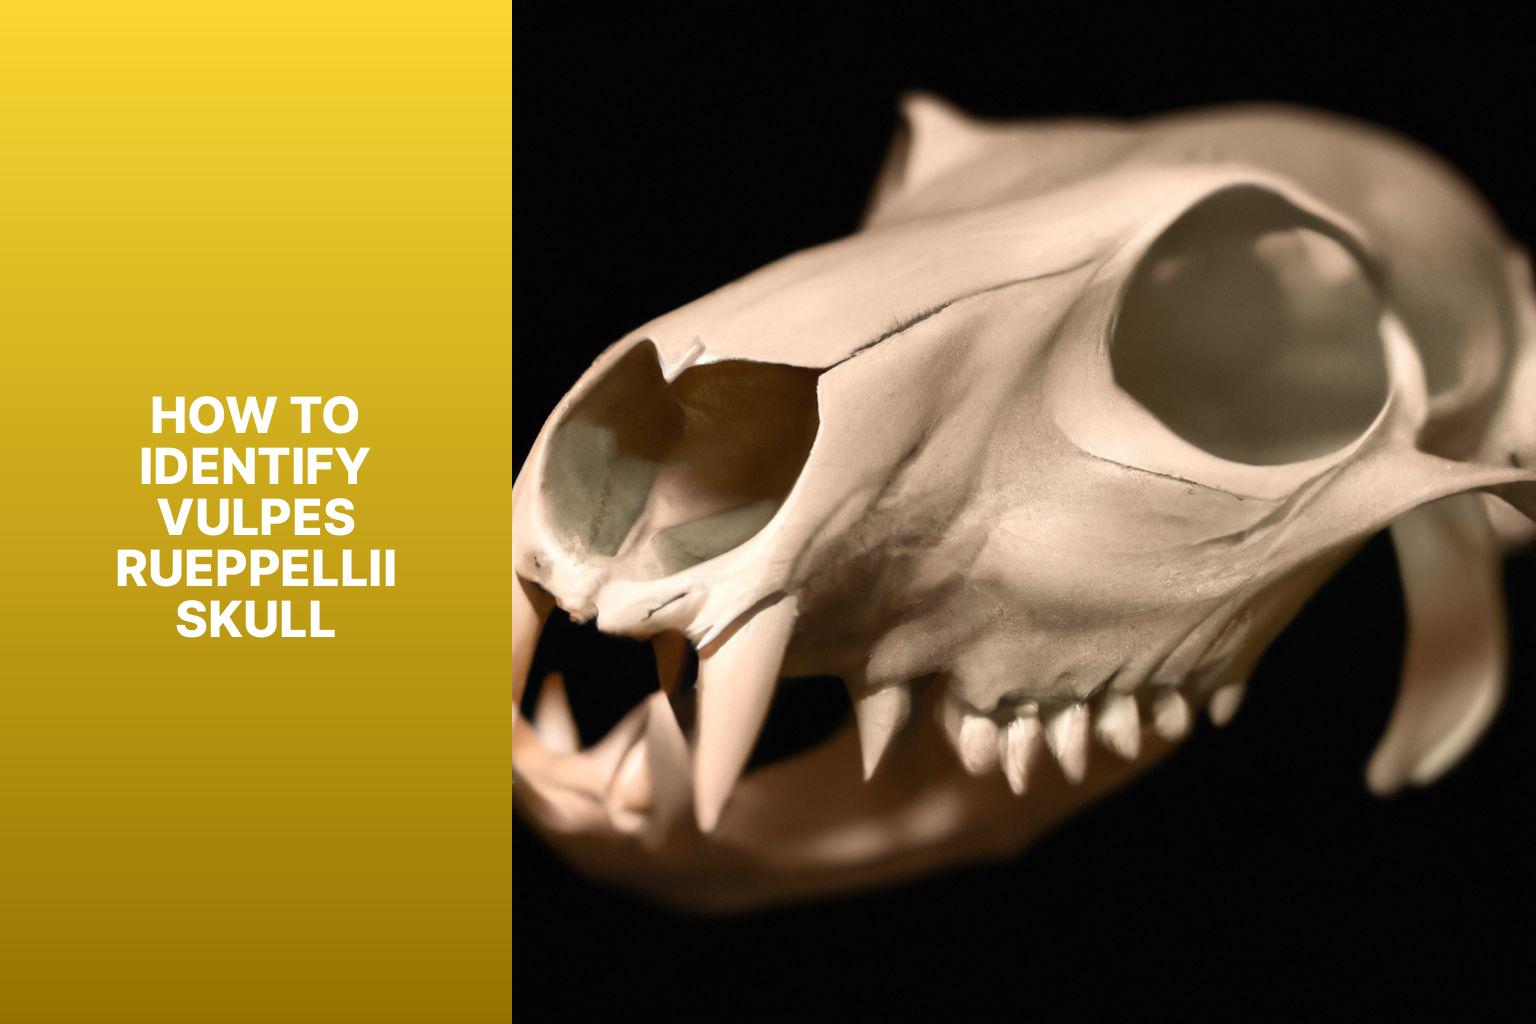 How to Identify Vulpes rueppellii Skull - Vulpes rueppellii Skull 